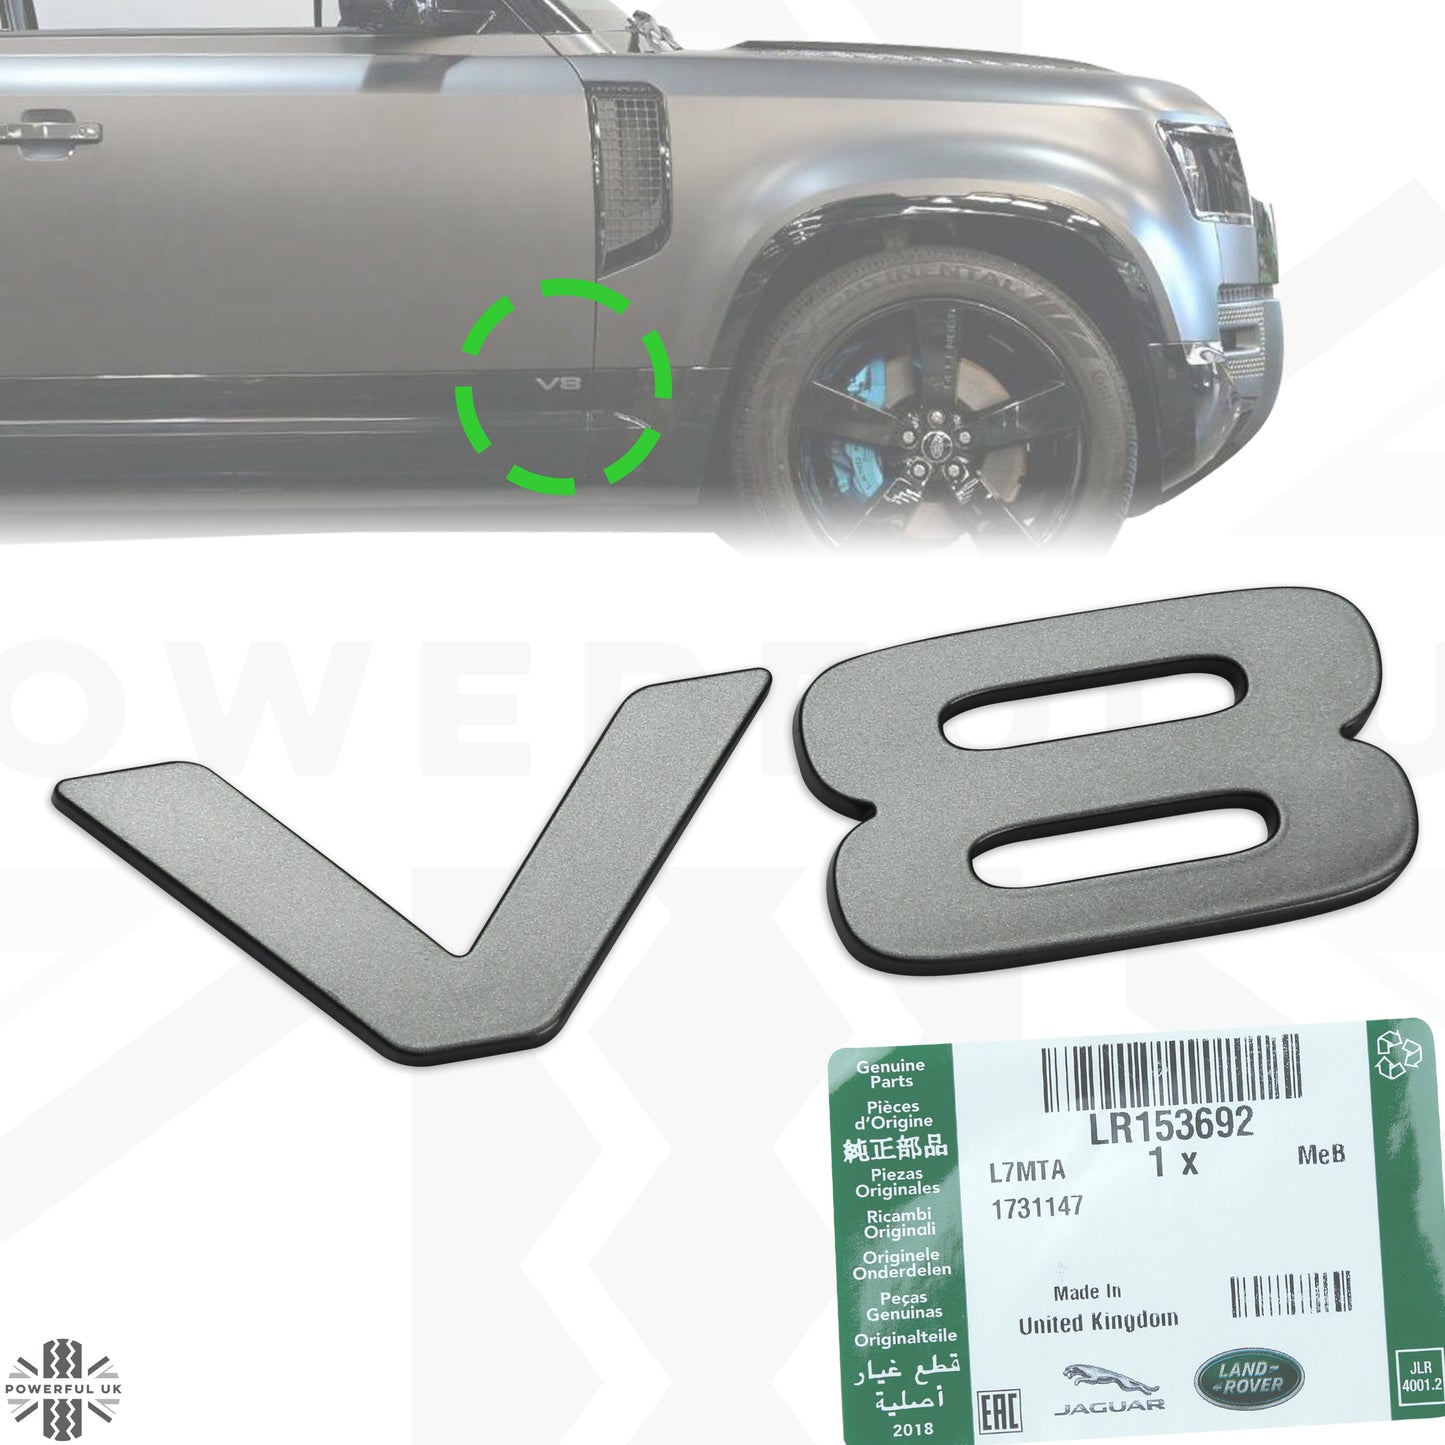 1x Genuine 'V8' Badge for Land Rover Defender L663 - Shadow Atlas